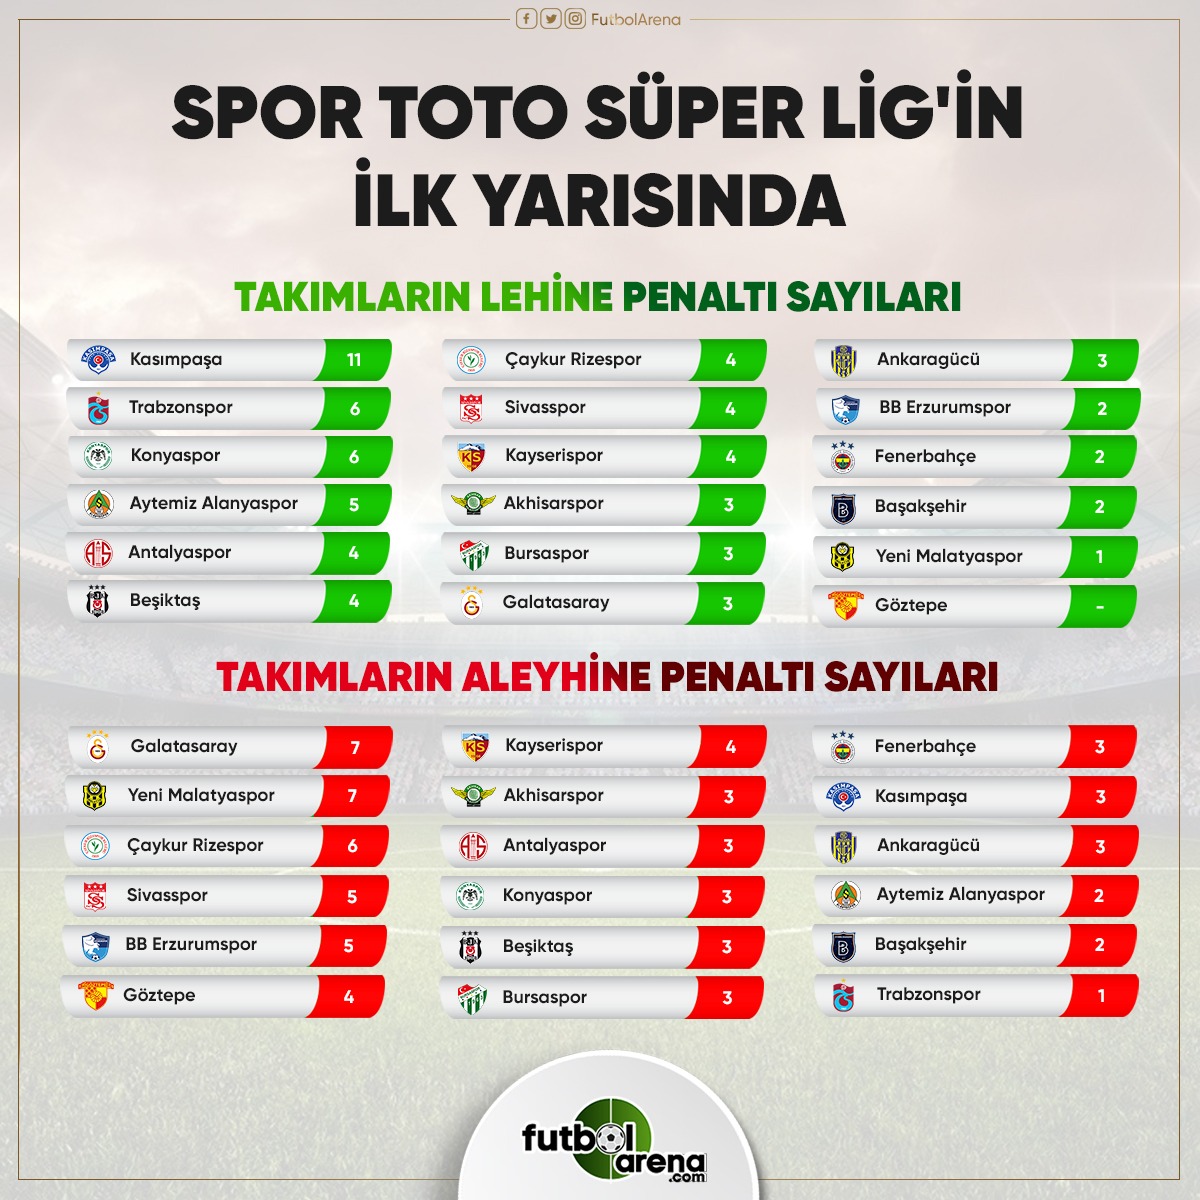 Süper Lig'in ilk yarısında penaltı sayıları